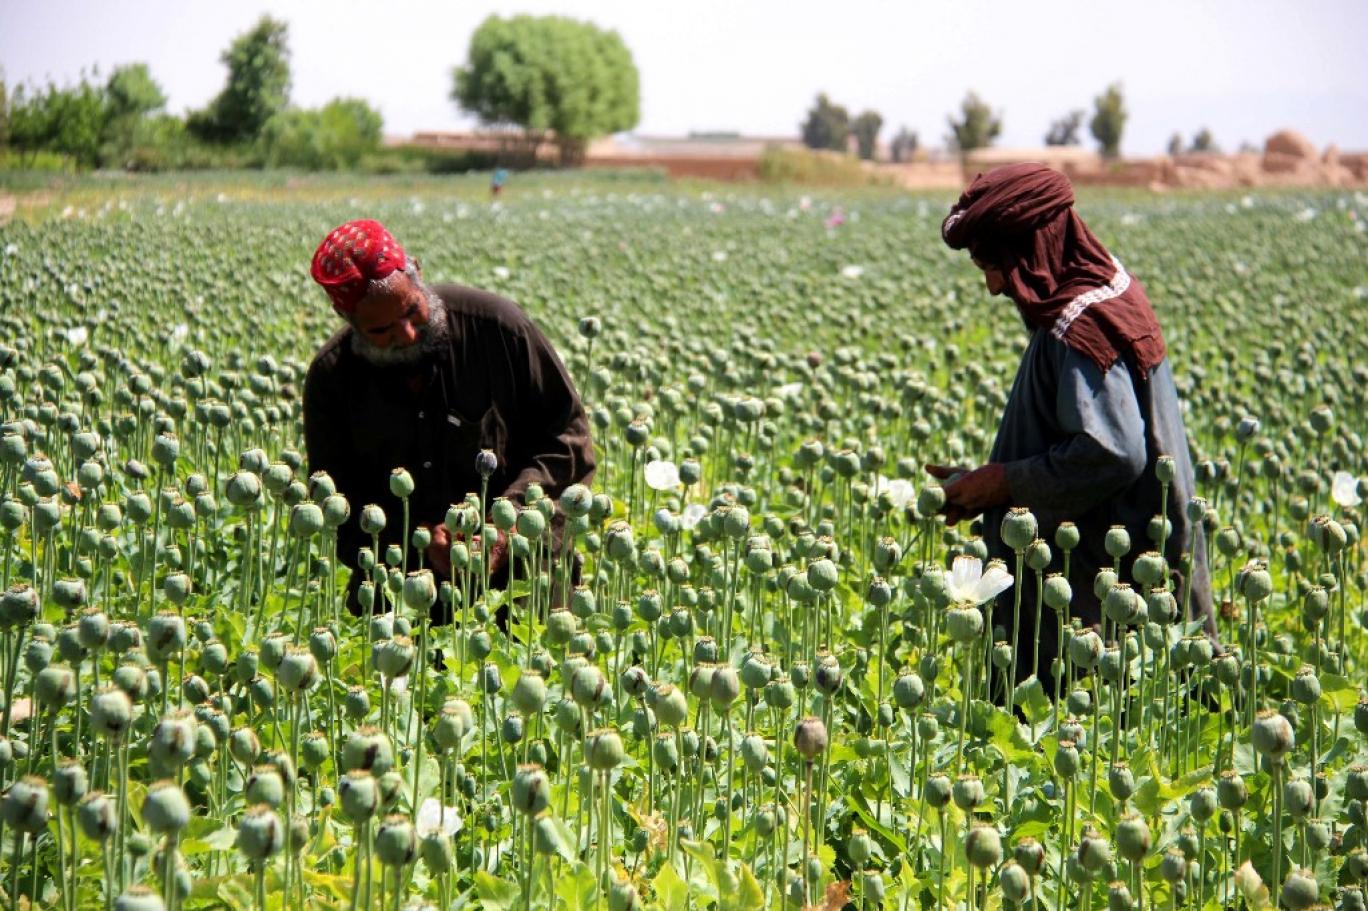   اصلاح بذر برای افزایش تولید موادمخدر در افغانستان  